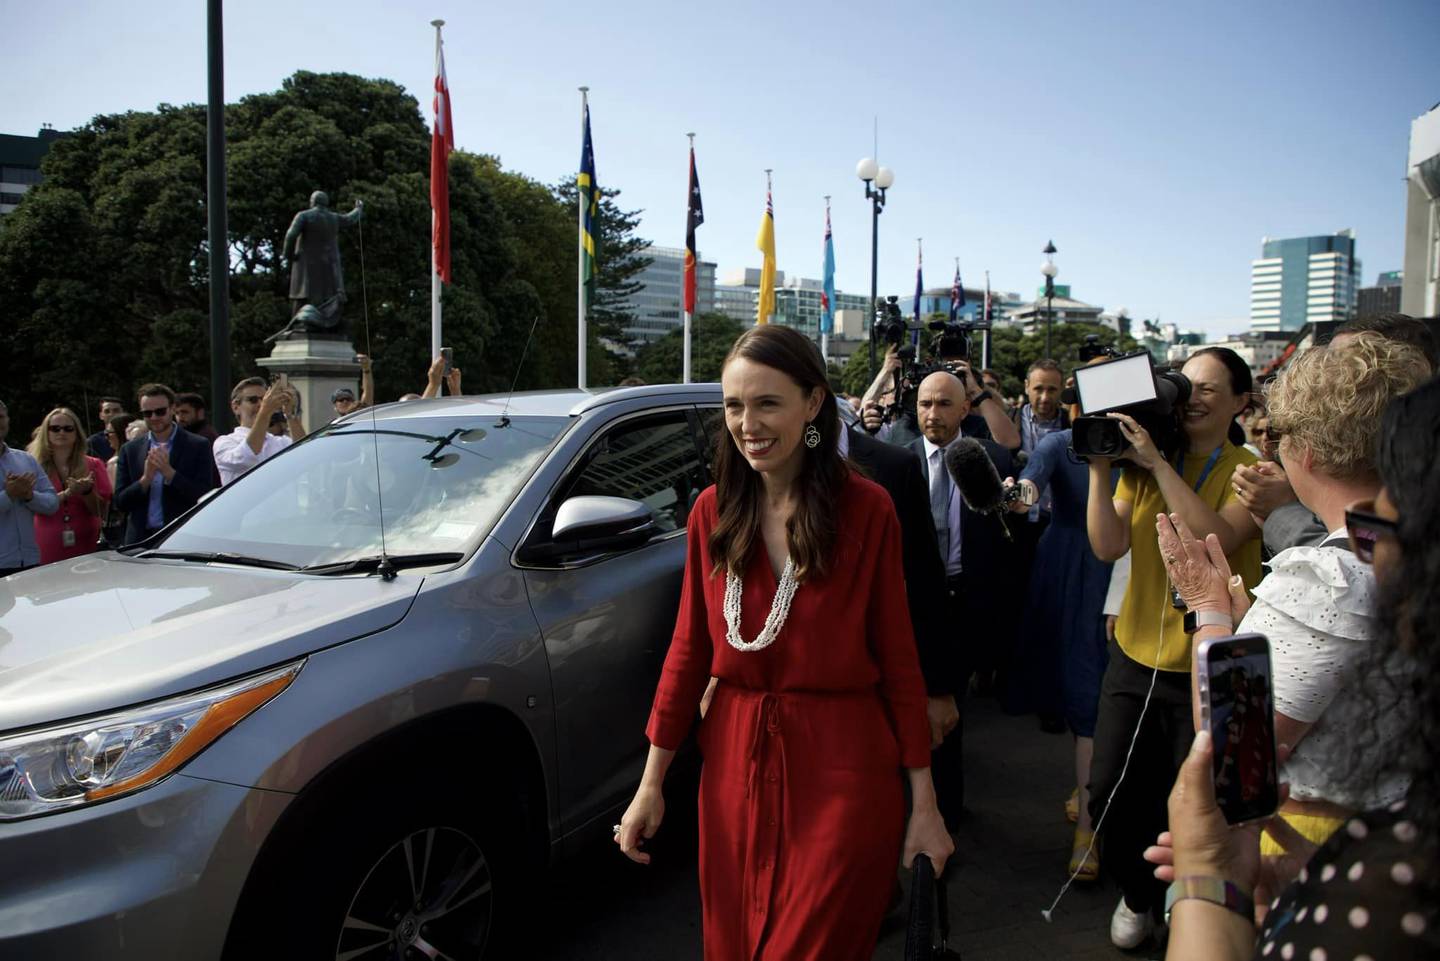 杰辛达·阿德恩 (Jacinda Ardern) 在辞职前最后一次走出议会。 迎接她的是响亮的欢呼声和“谢谢你”的尖叫声。 图片/新西兰工党